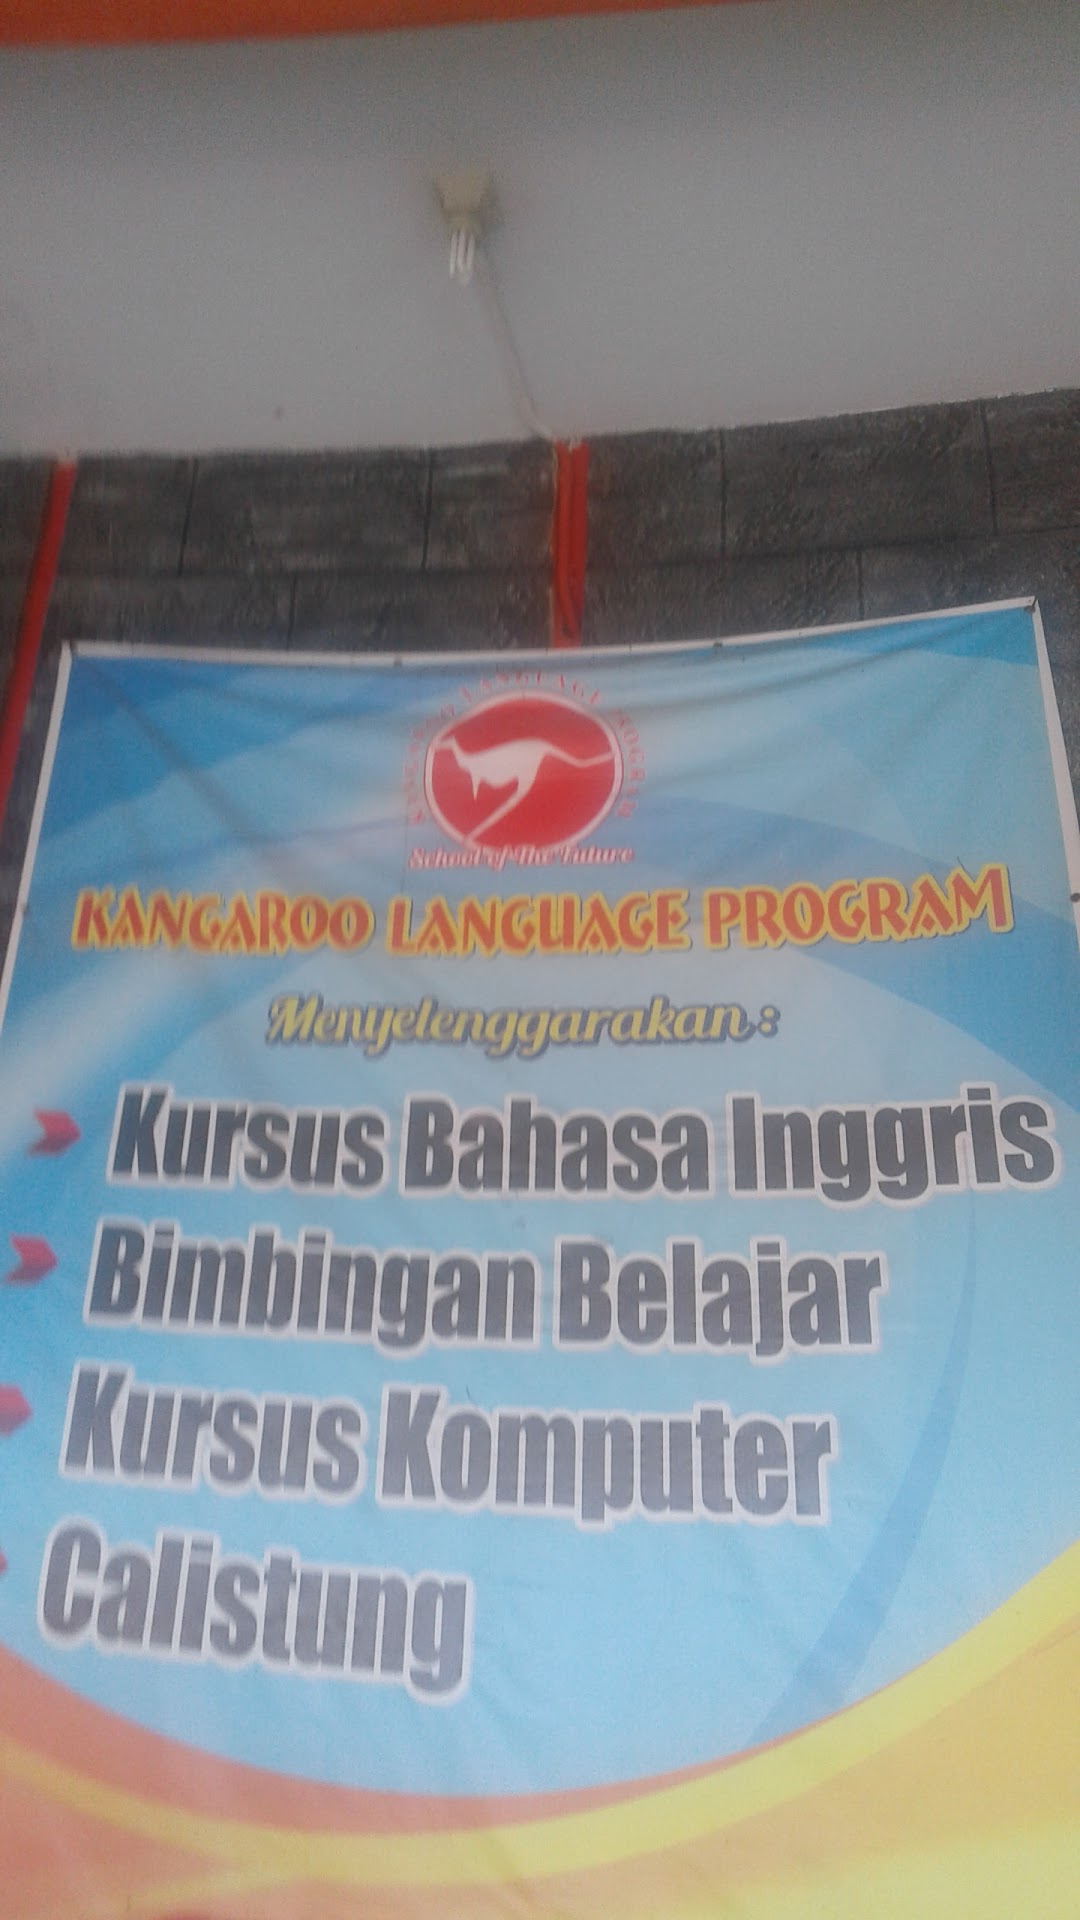 LKP Kangaroo Language Program